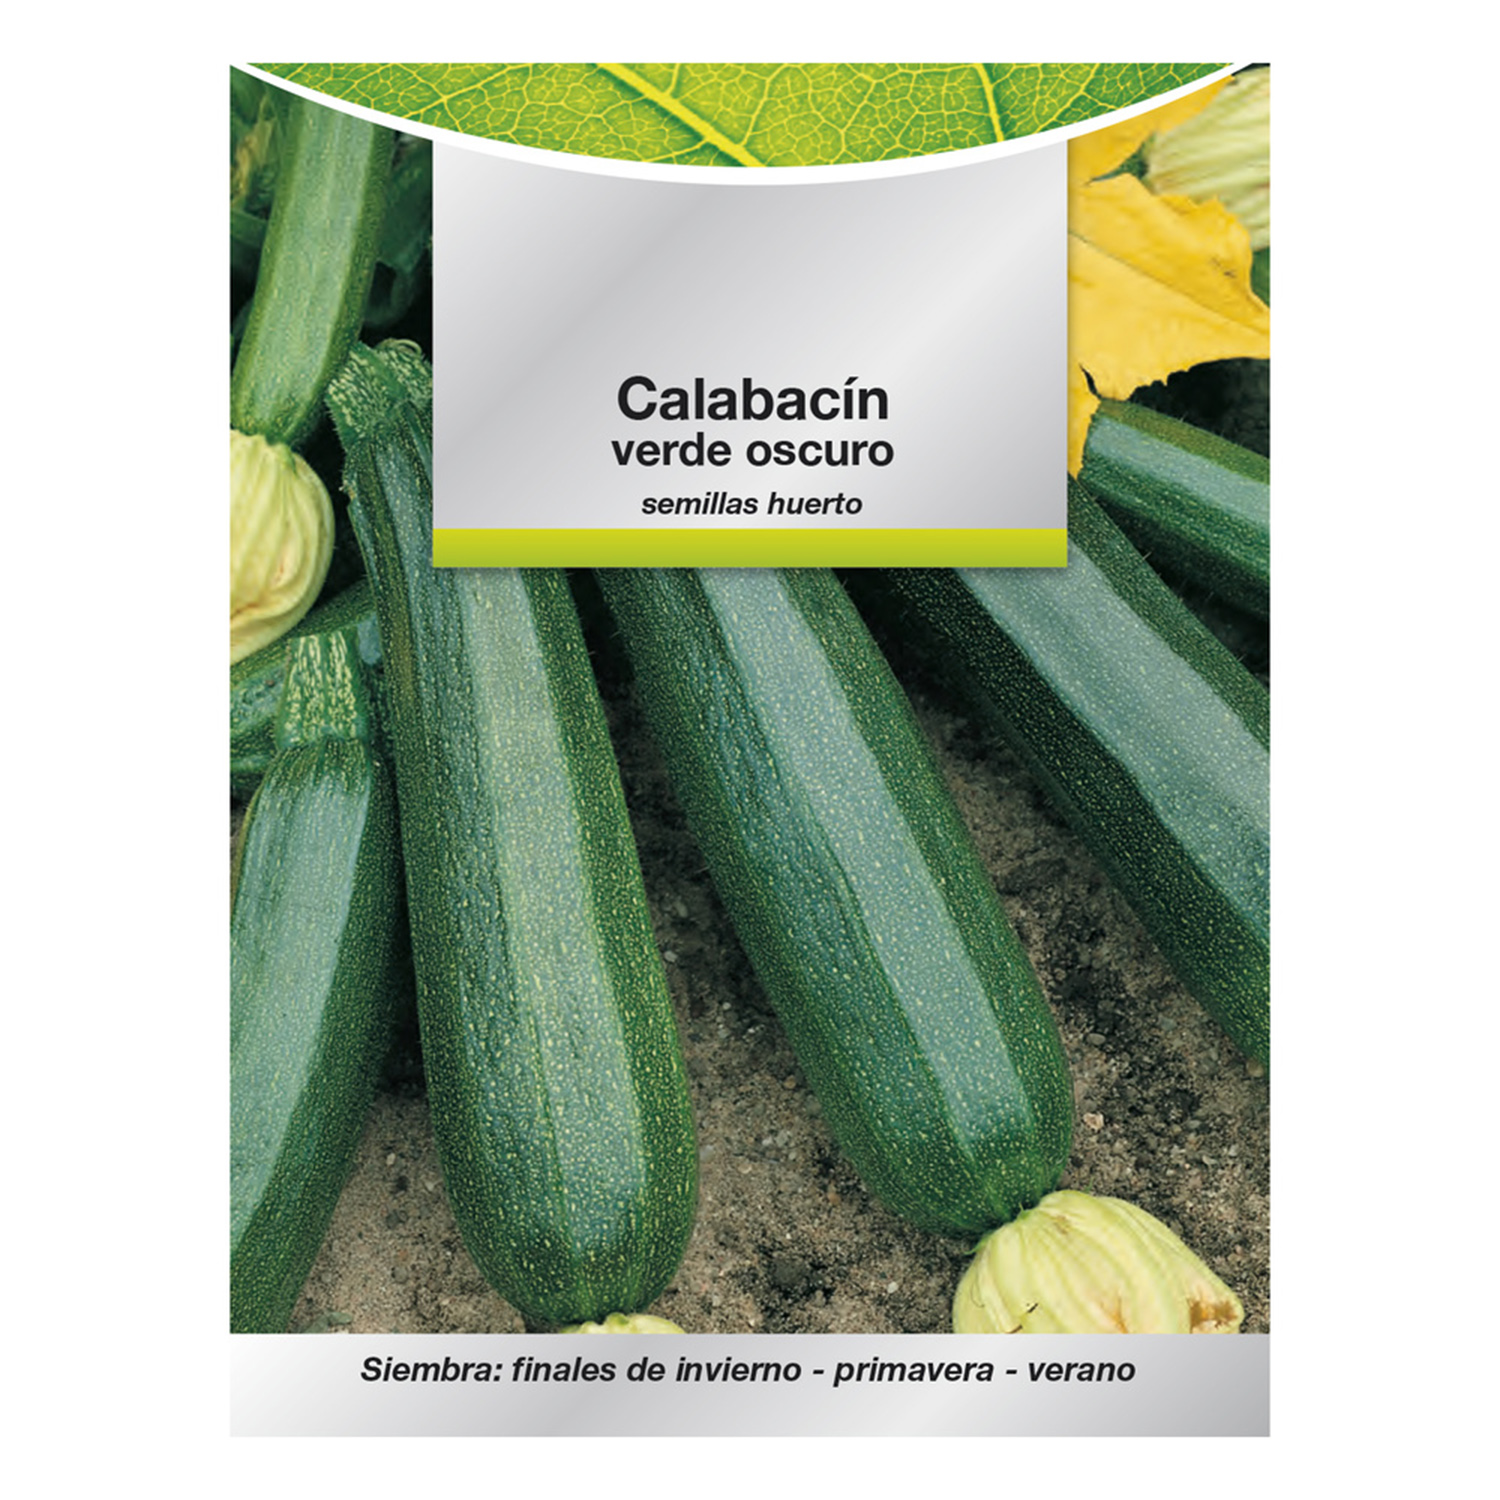 Semillas Calabacin Verde Oscuro (5 gramos) Semillas Verduras, Horticultura, Horticola, Semillas Huer